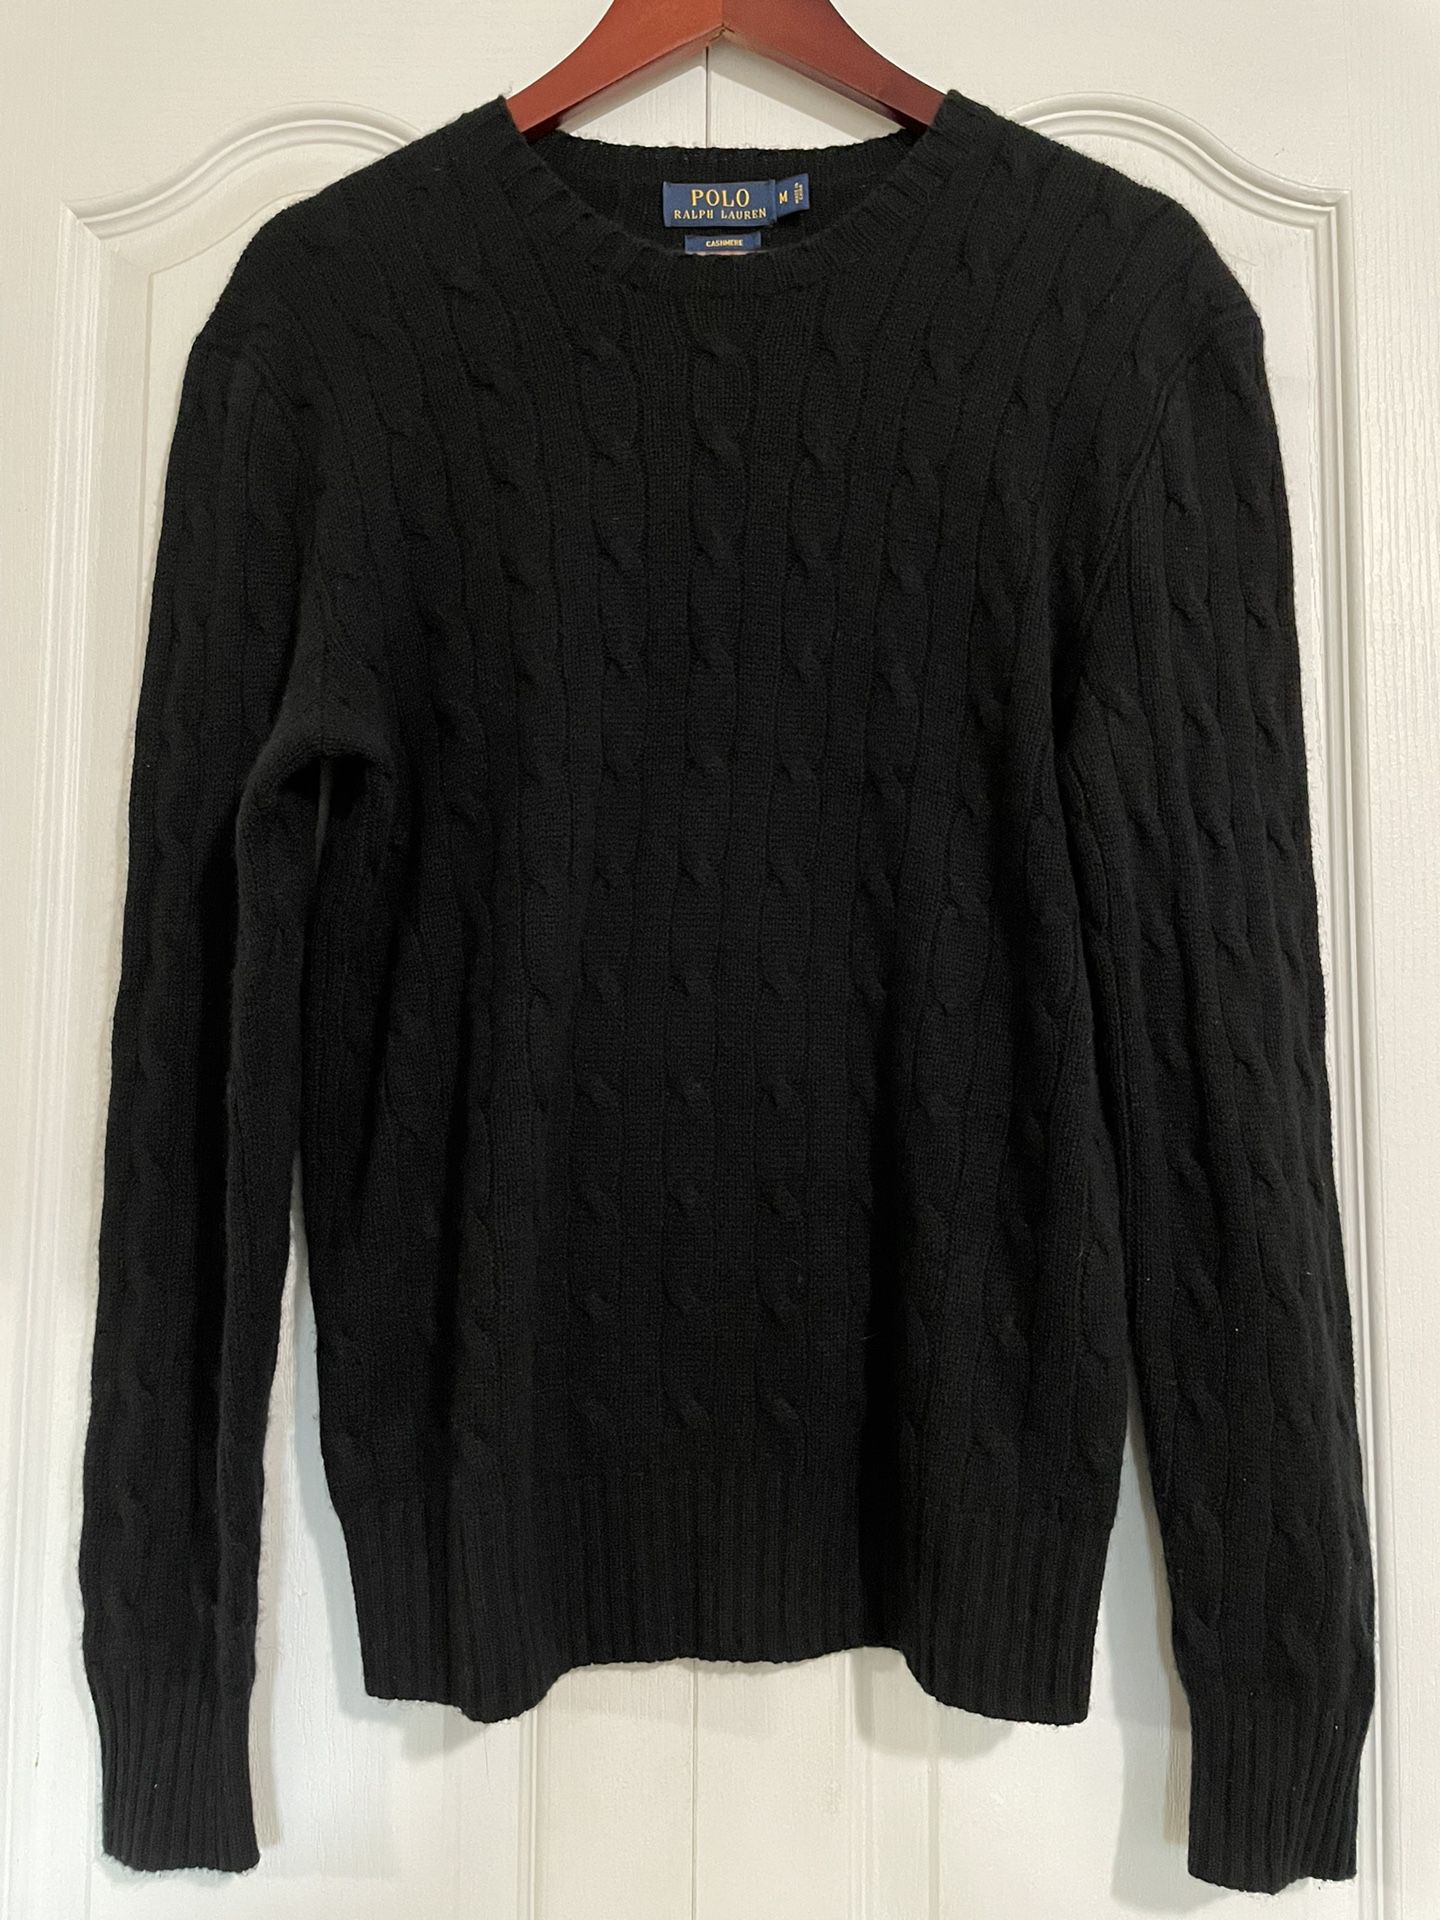 Men’s Ralph Lauren Cashmere Sweater